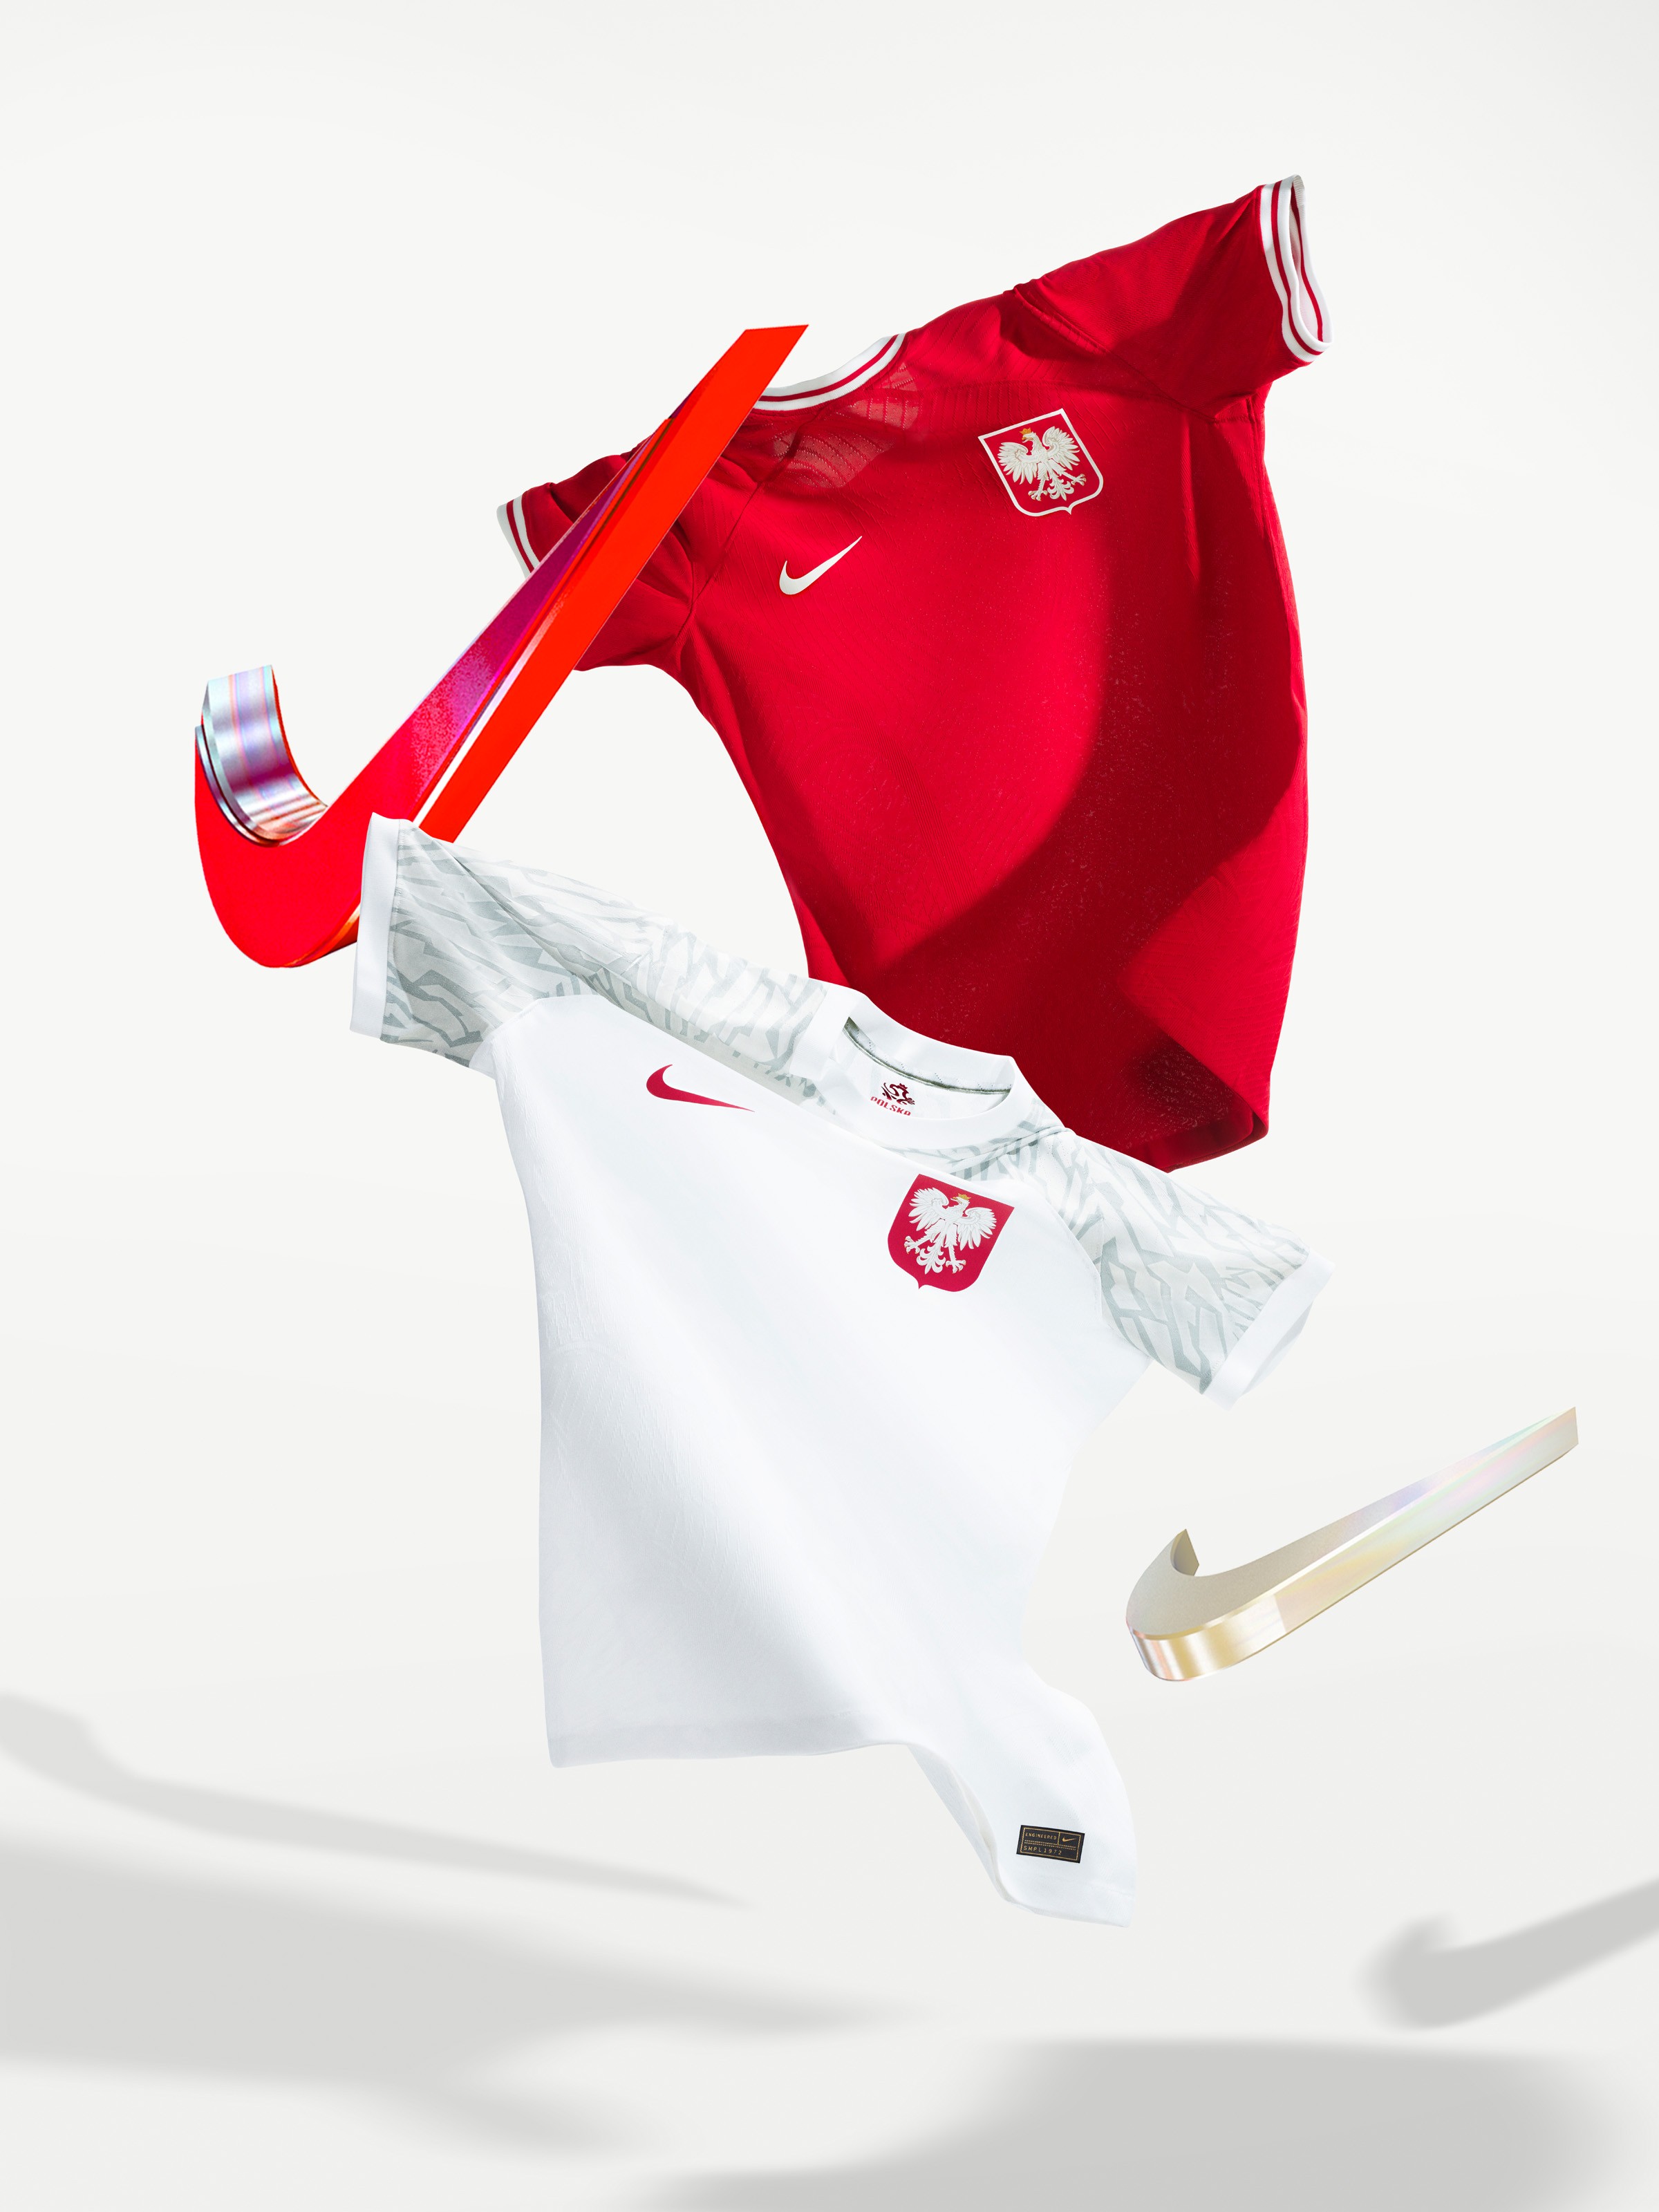 Camisetas de Polonia para el Mundial de Qatar 2022.